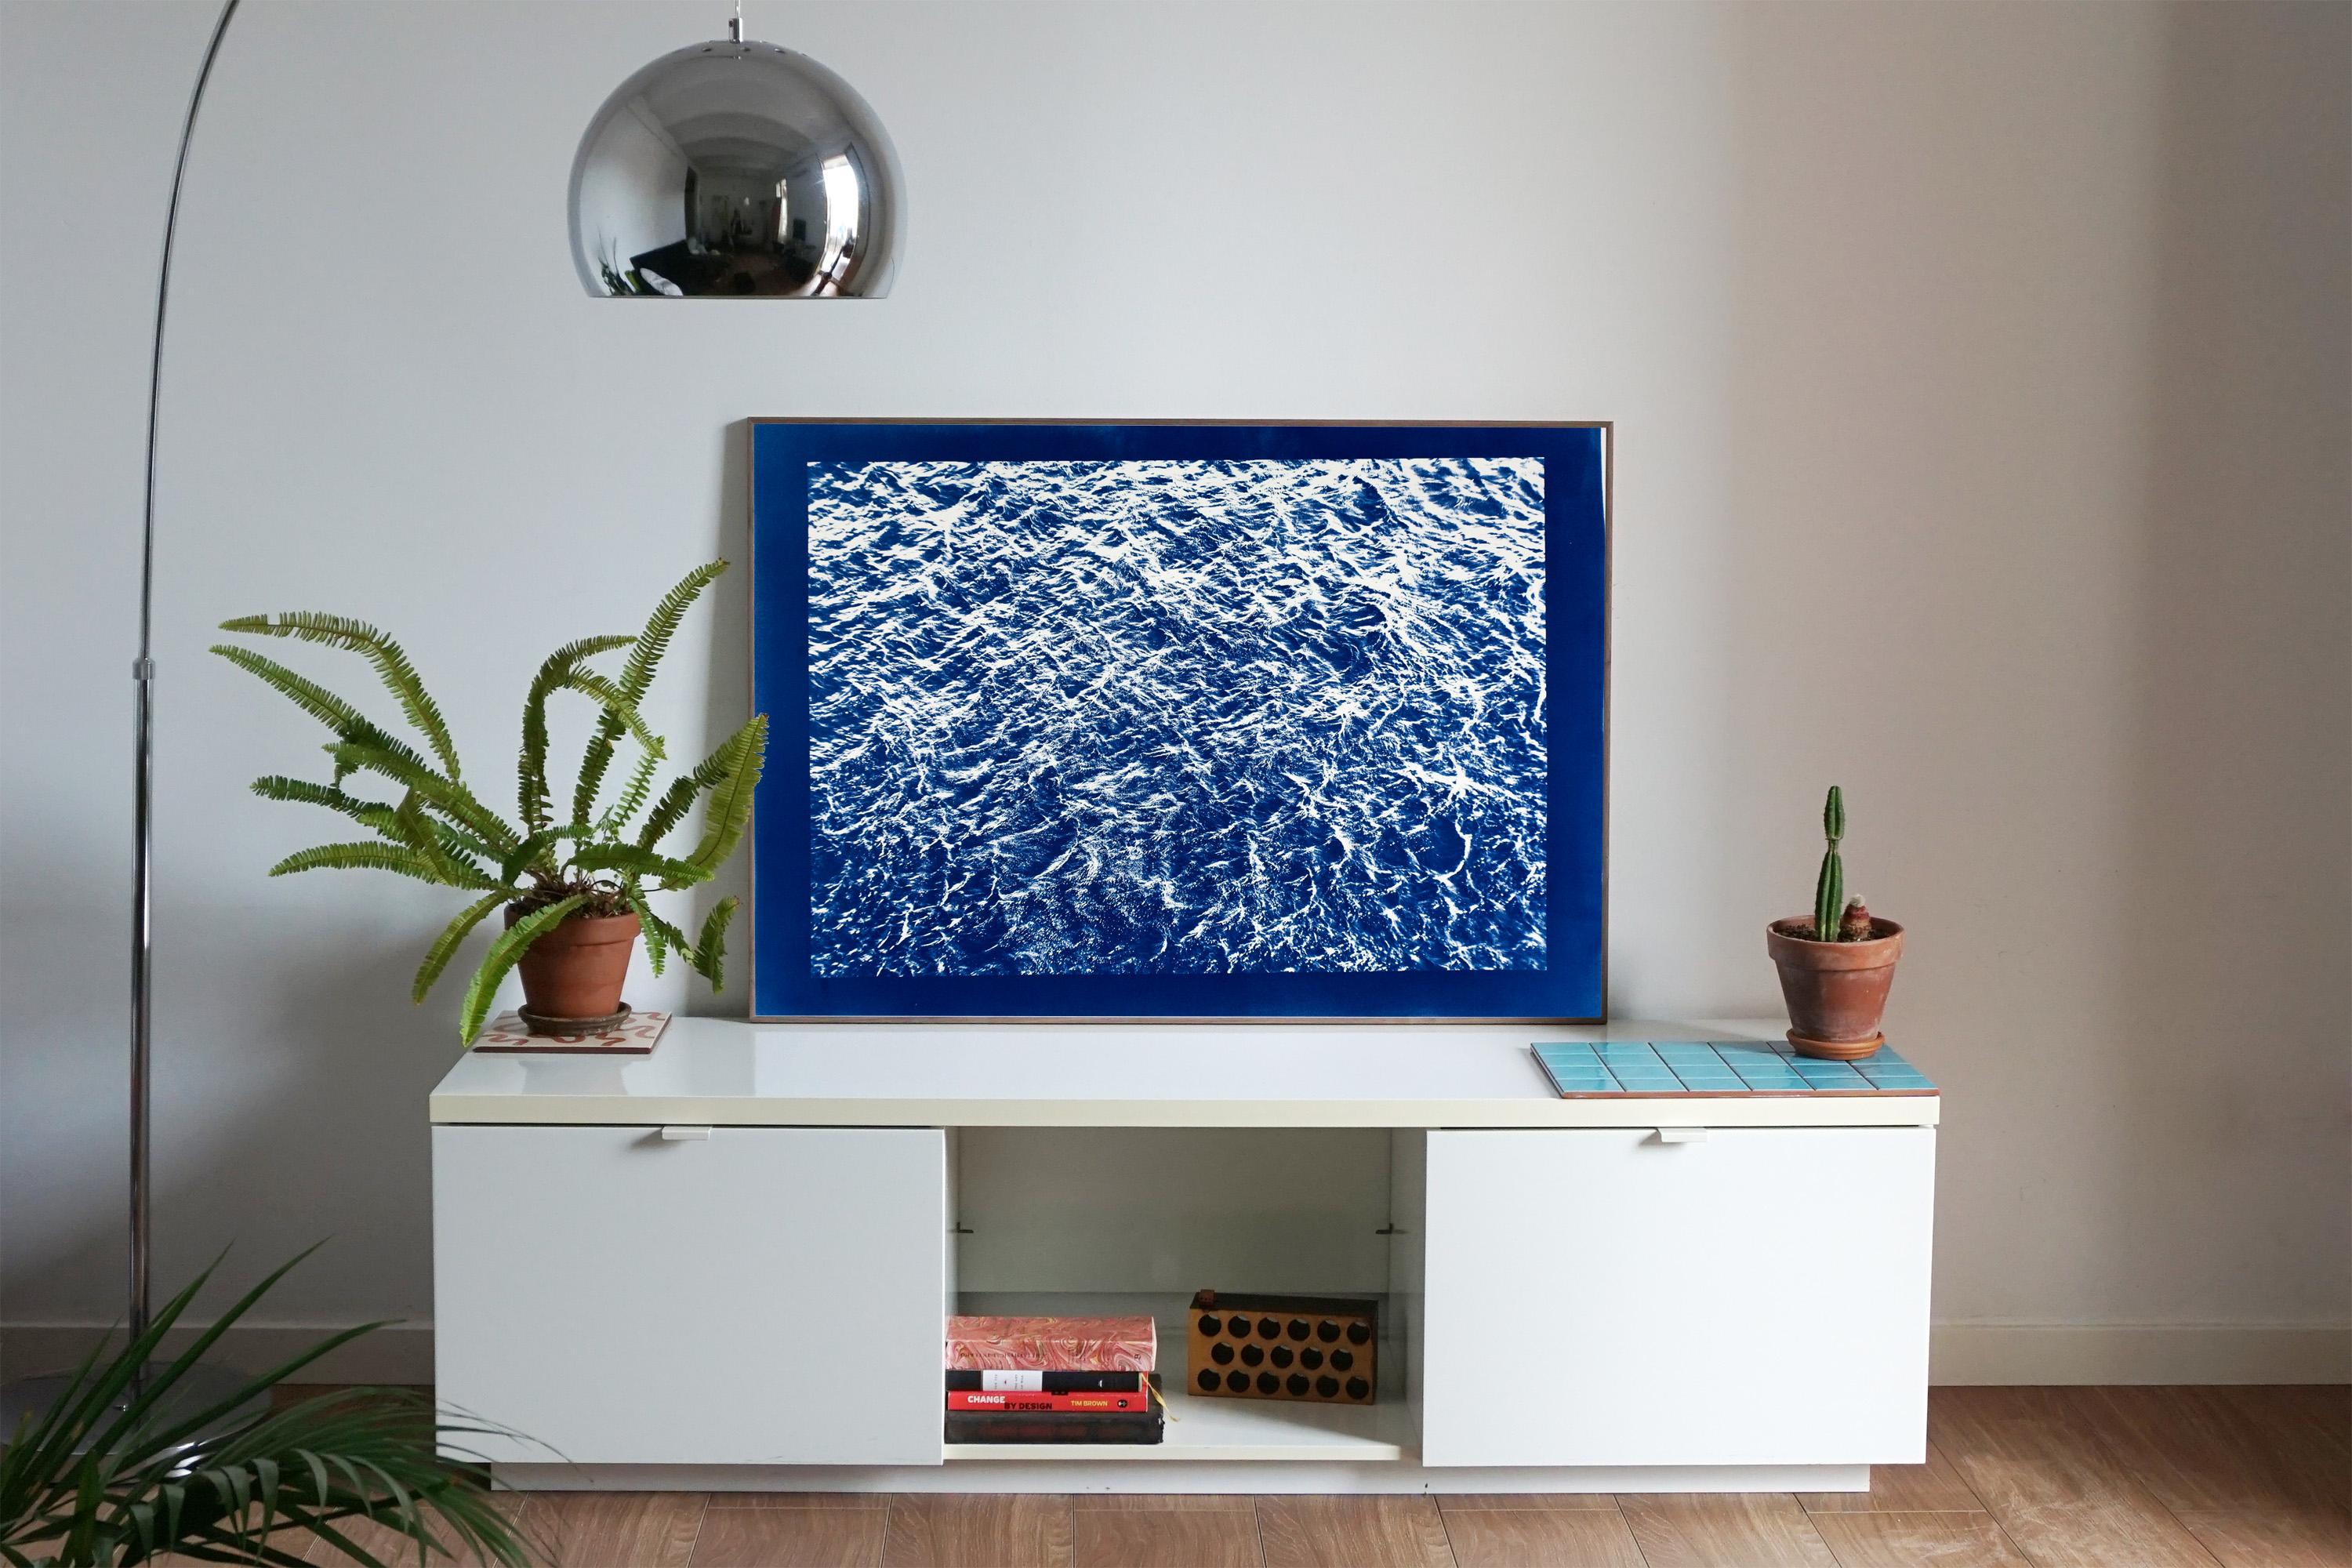 Très grand paysage marin cyanotype représentant des courants d'océan Pacifique, bleu et blanc nautique - Photograph de Kind of Cyan